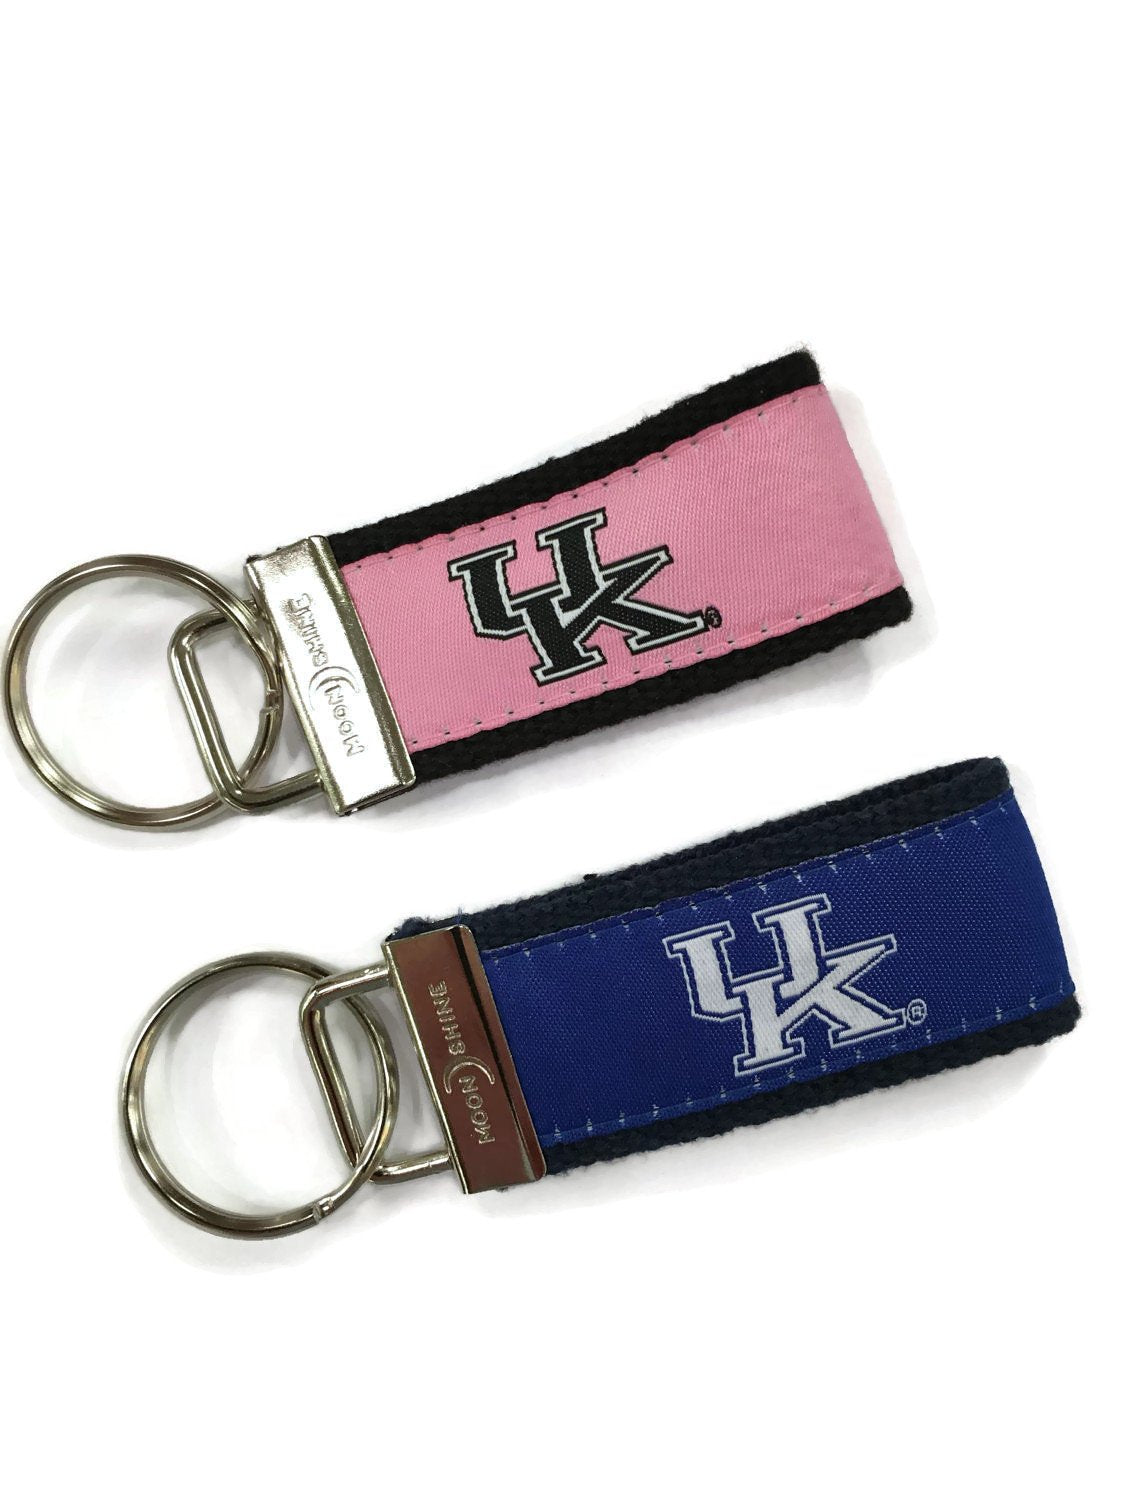 Kentucky University UK web key chains